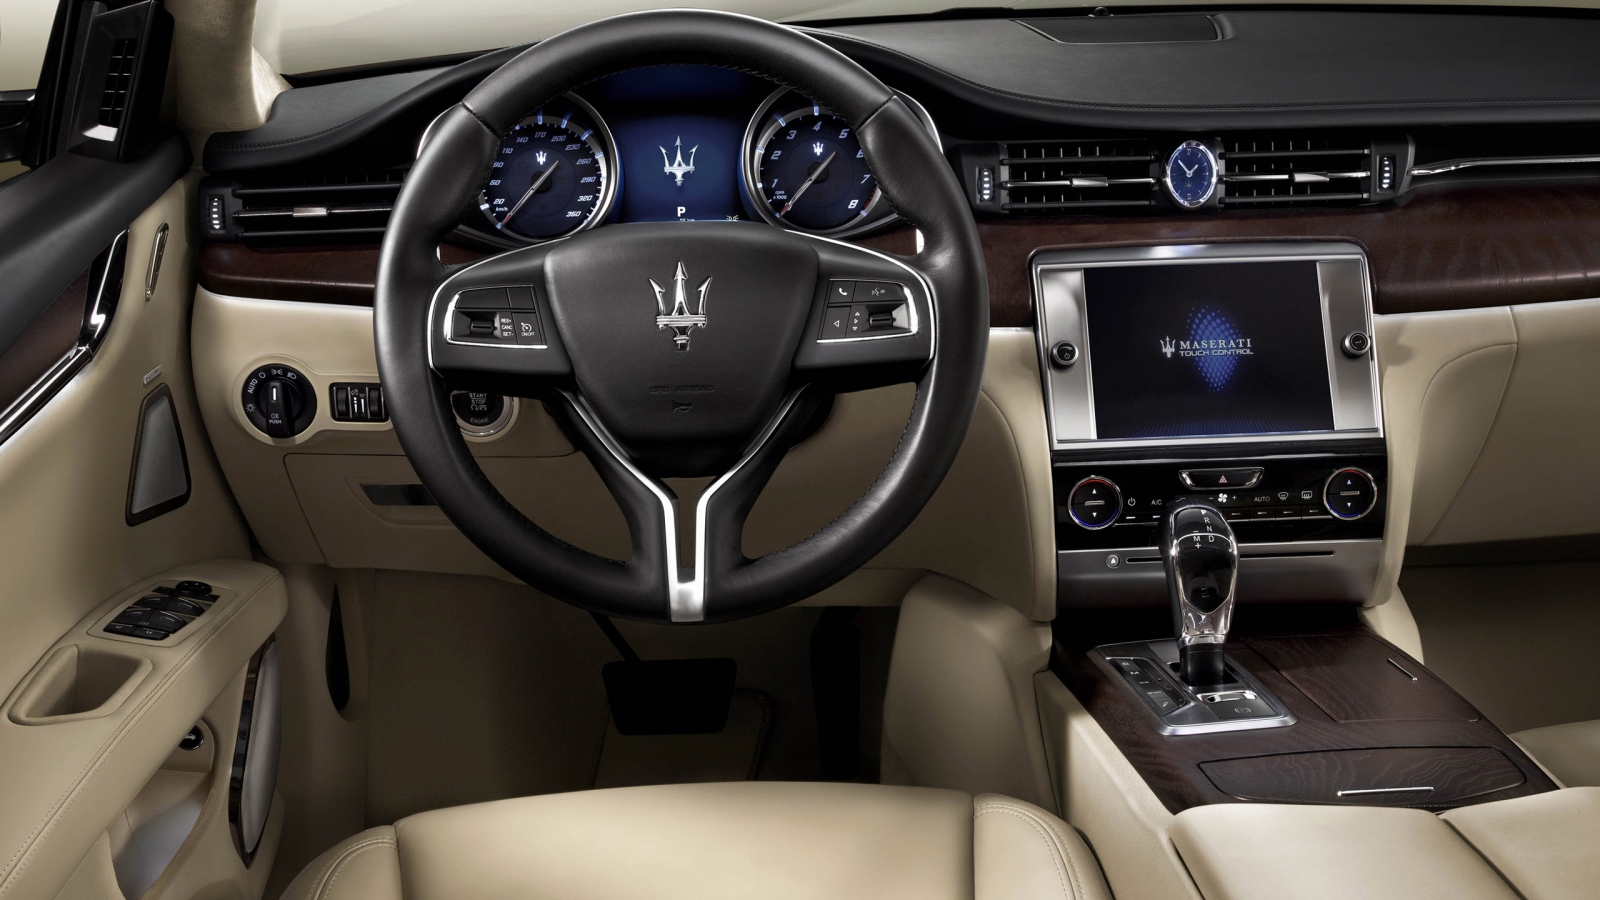 Interior of Maserati Quattroporte for 1600 x 900 HDTV resolution